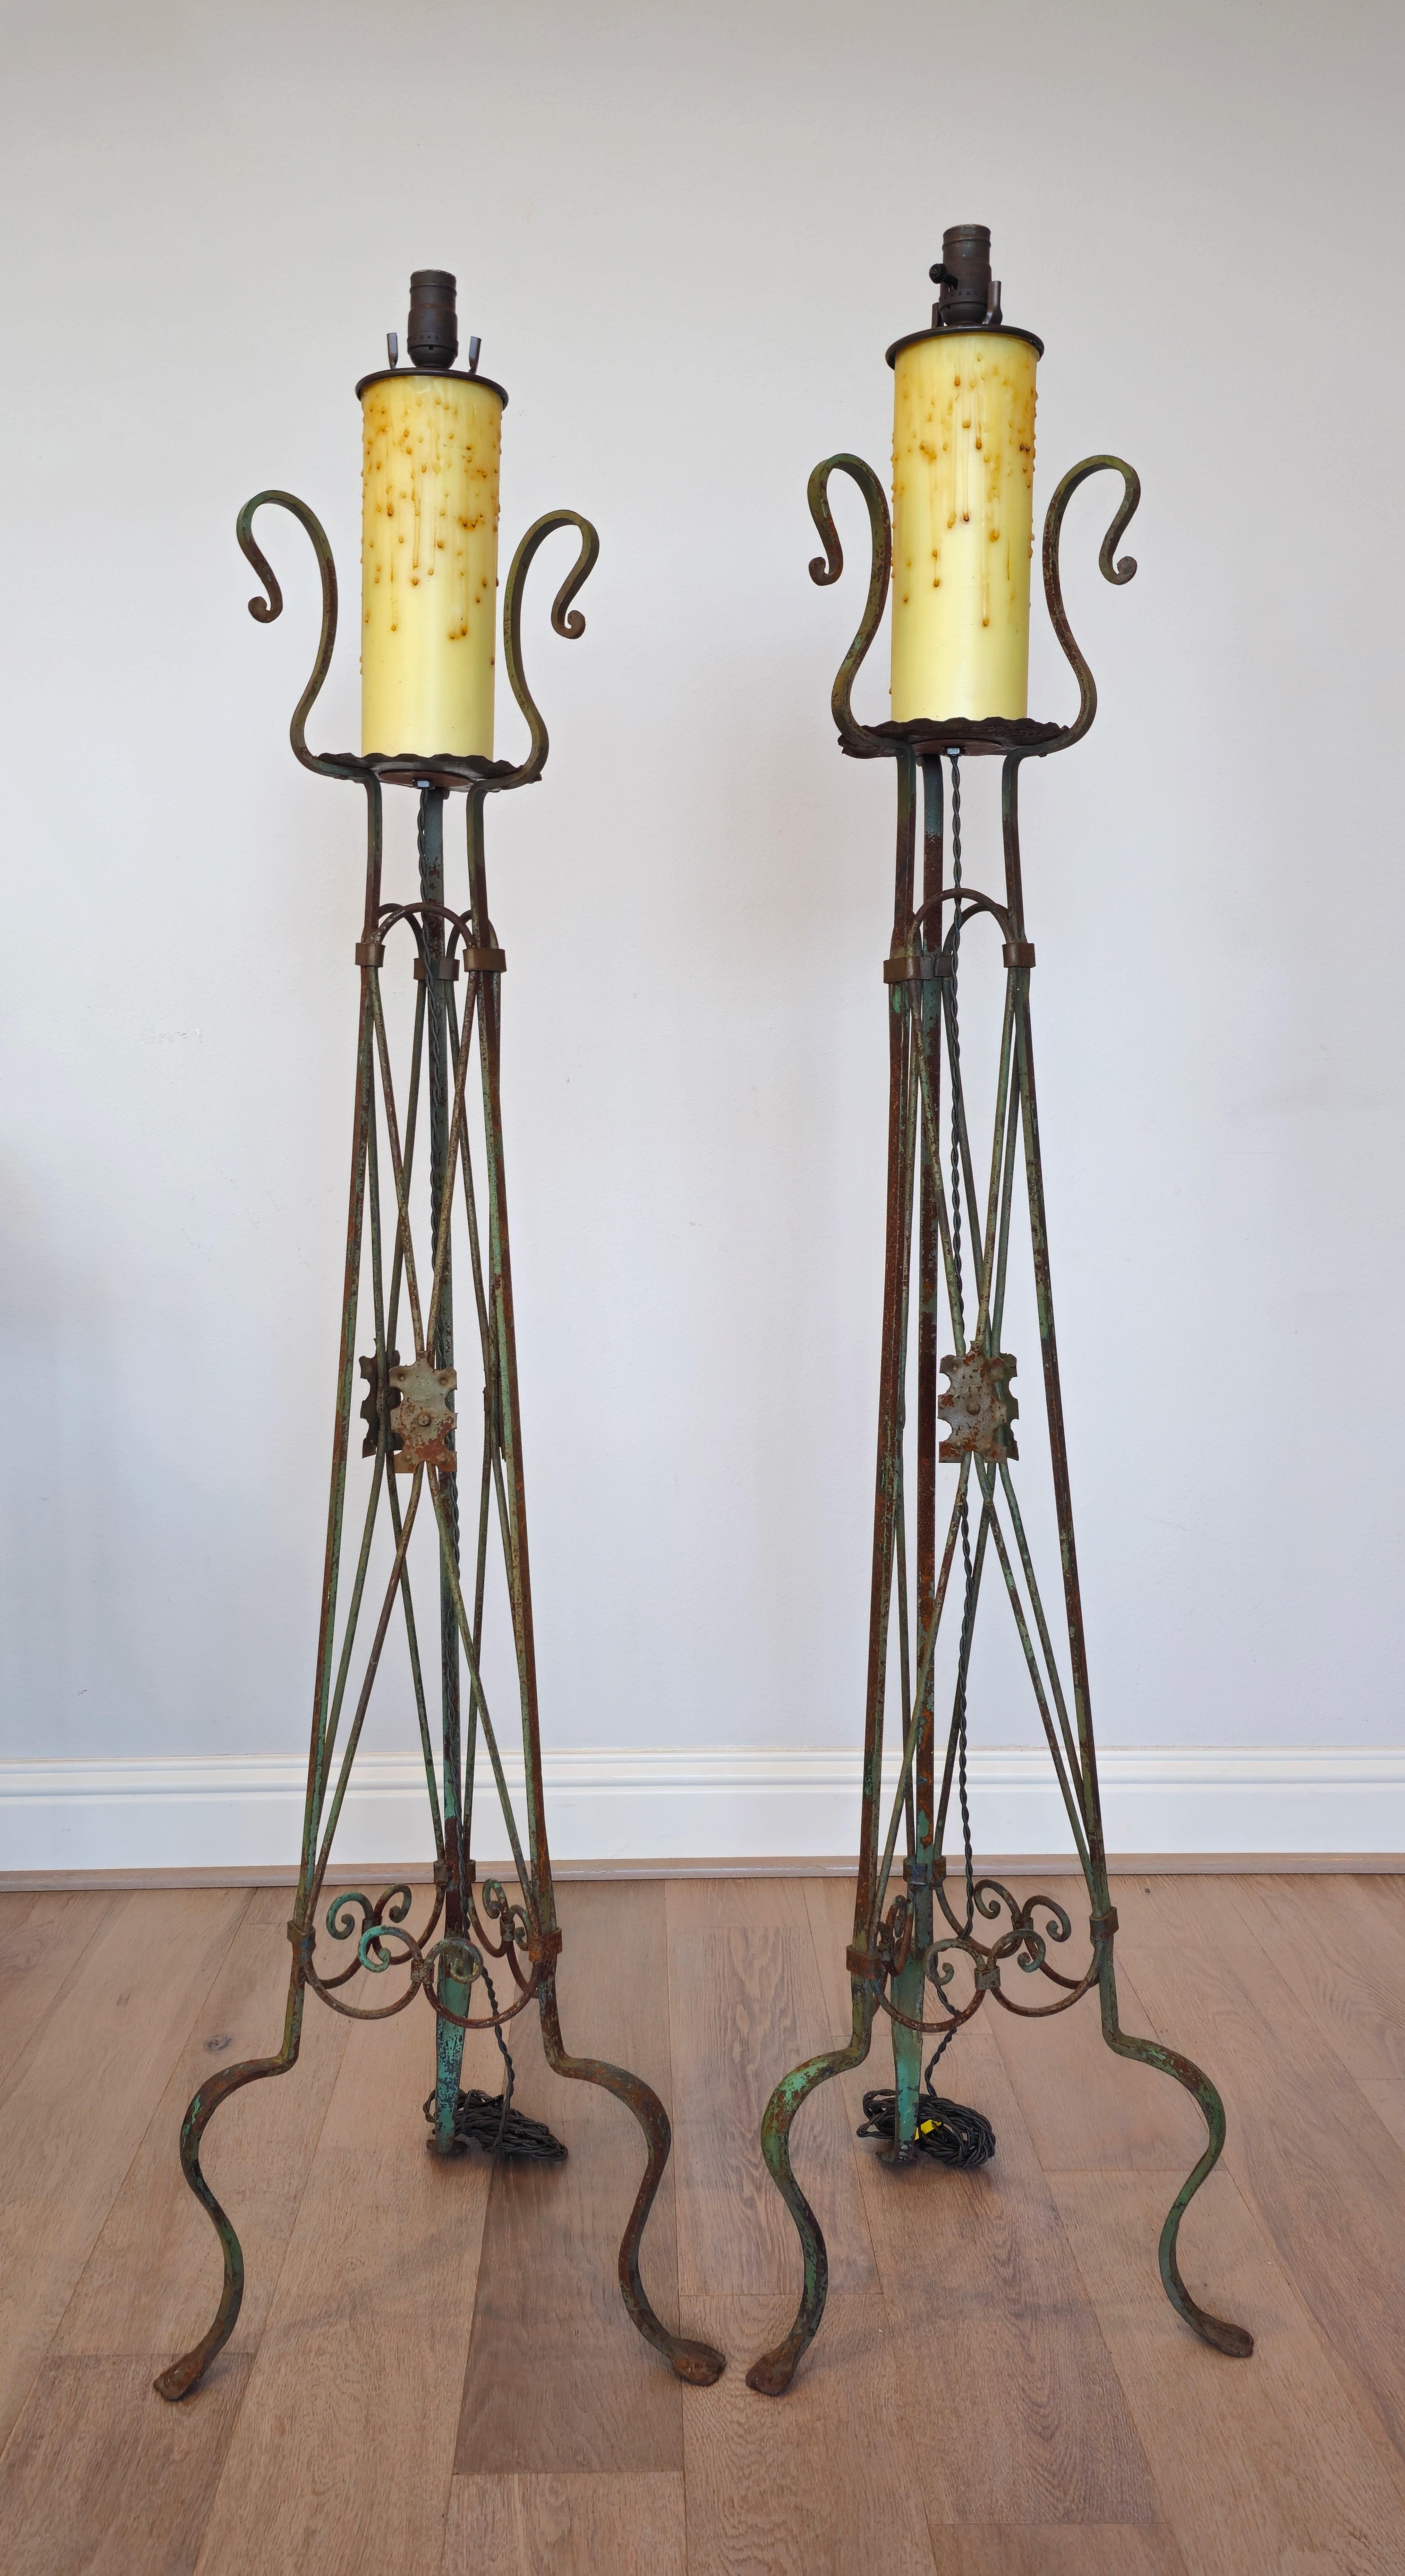 Ein prächtiges Paar antiker neoklassizistischer Athener Fake-Kerzenleuchter aus Eisen - Stehlampen.

Jeweils mit einem Licht, das über einer überdimensionalen falschen Kerze angebracht ist, auf einem stark patinierten, grün lackierten Eisenständer